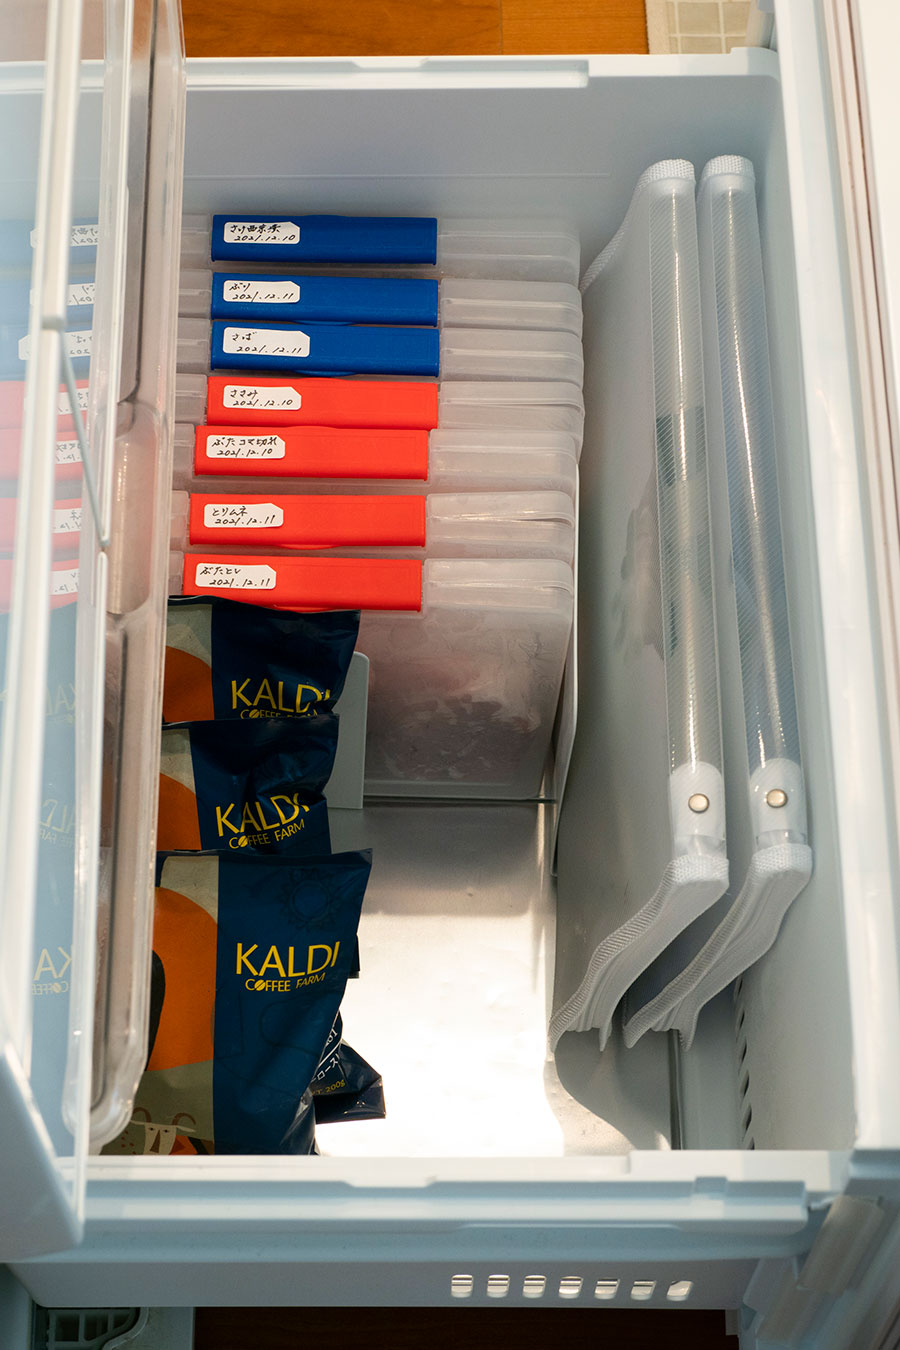 本棚のような冷凍庫。赤のファイルには肉類を、青のファイルには魚類を、小分けして保存。アイスノンもファイルケースに入れている。